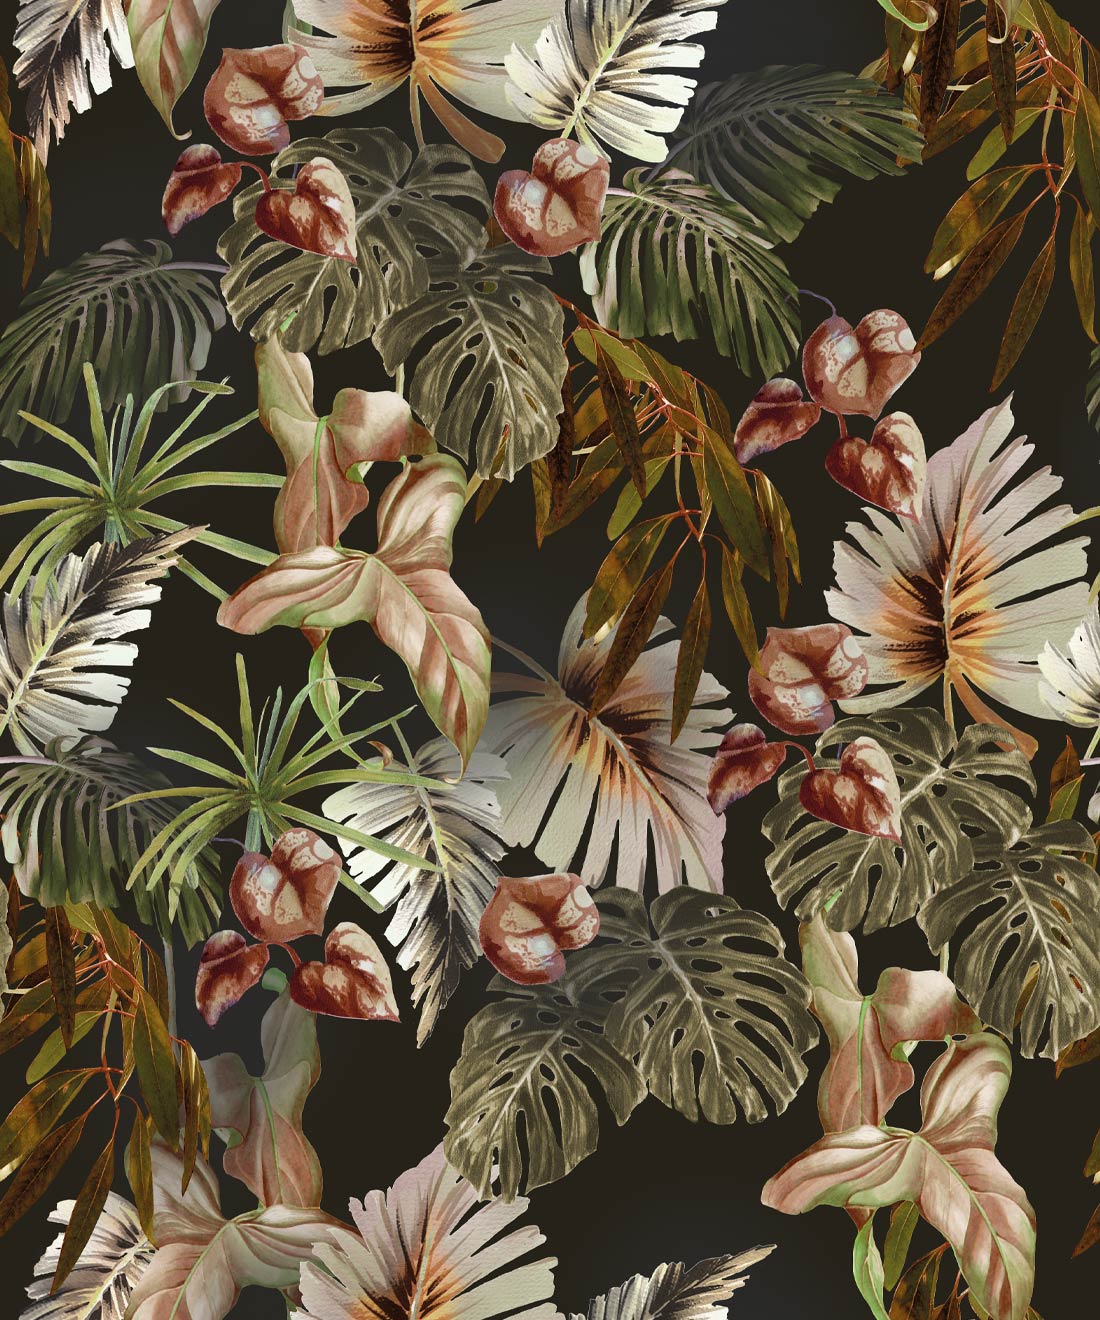 jungle wallpaper